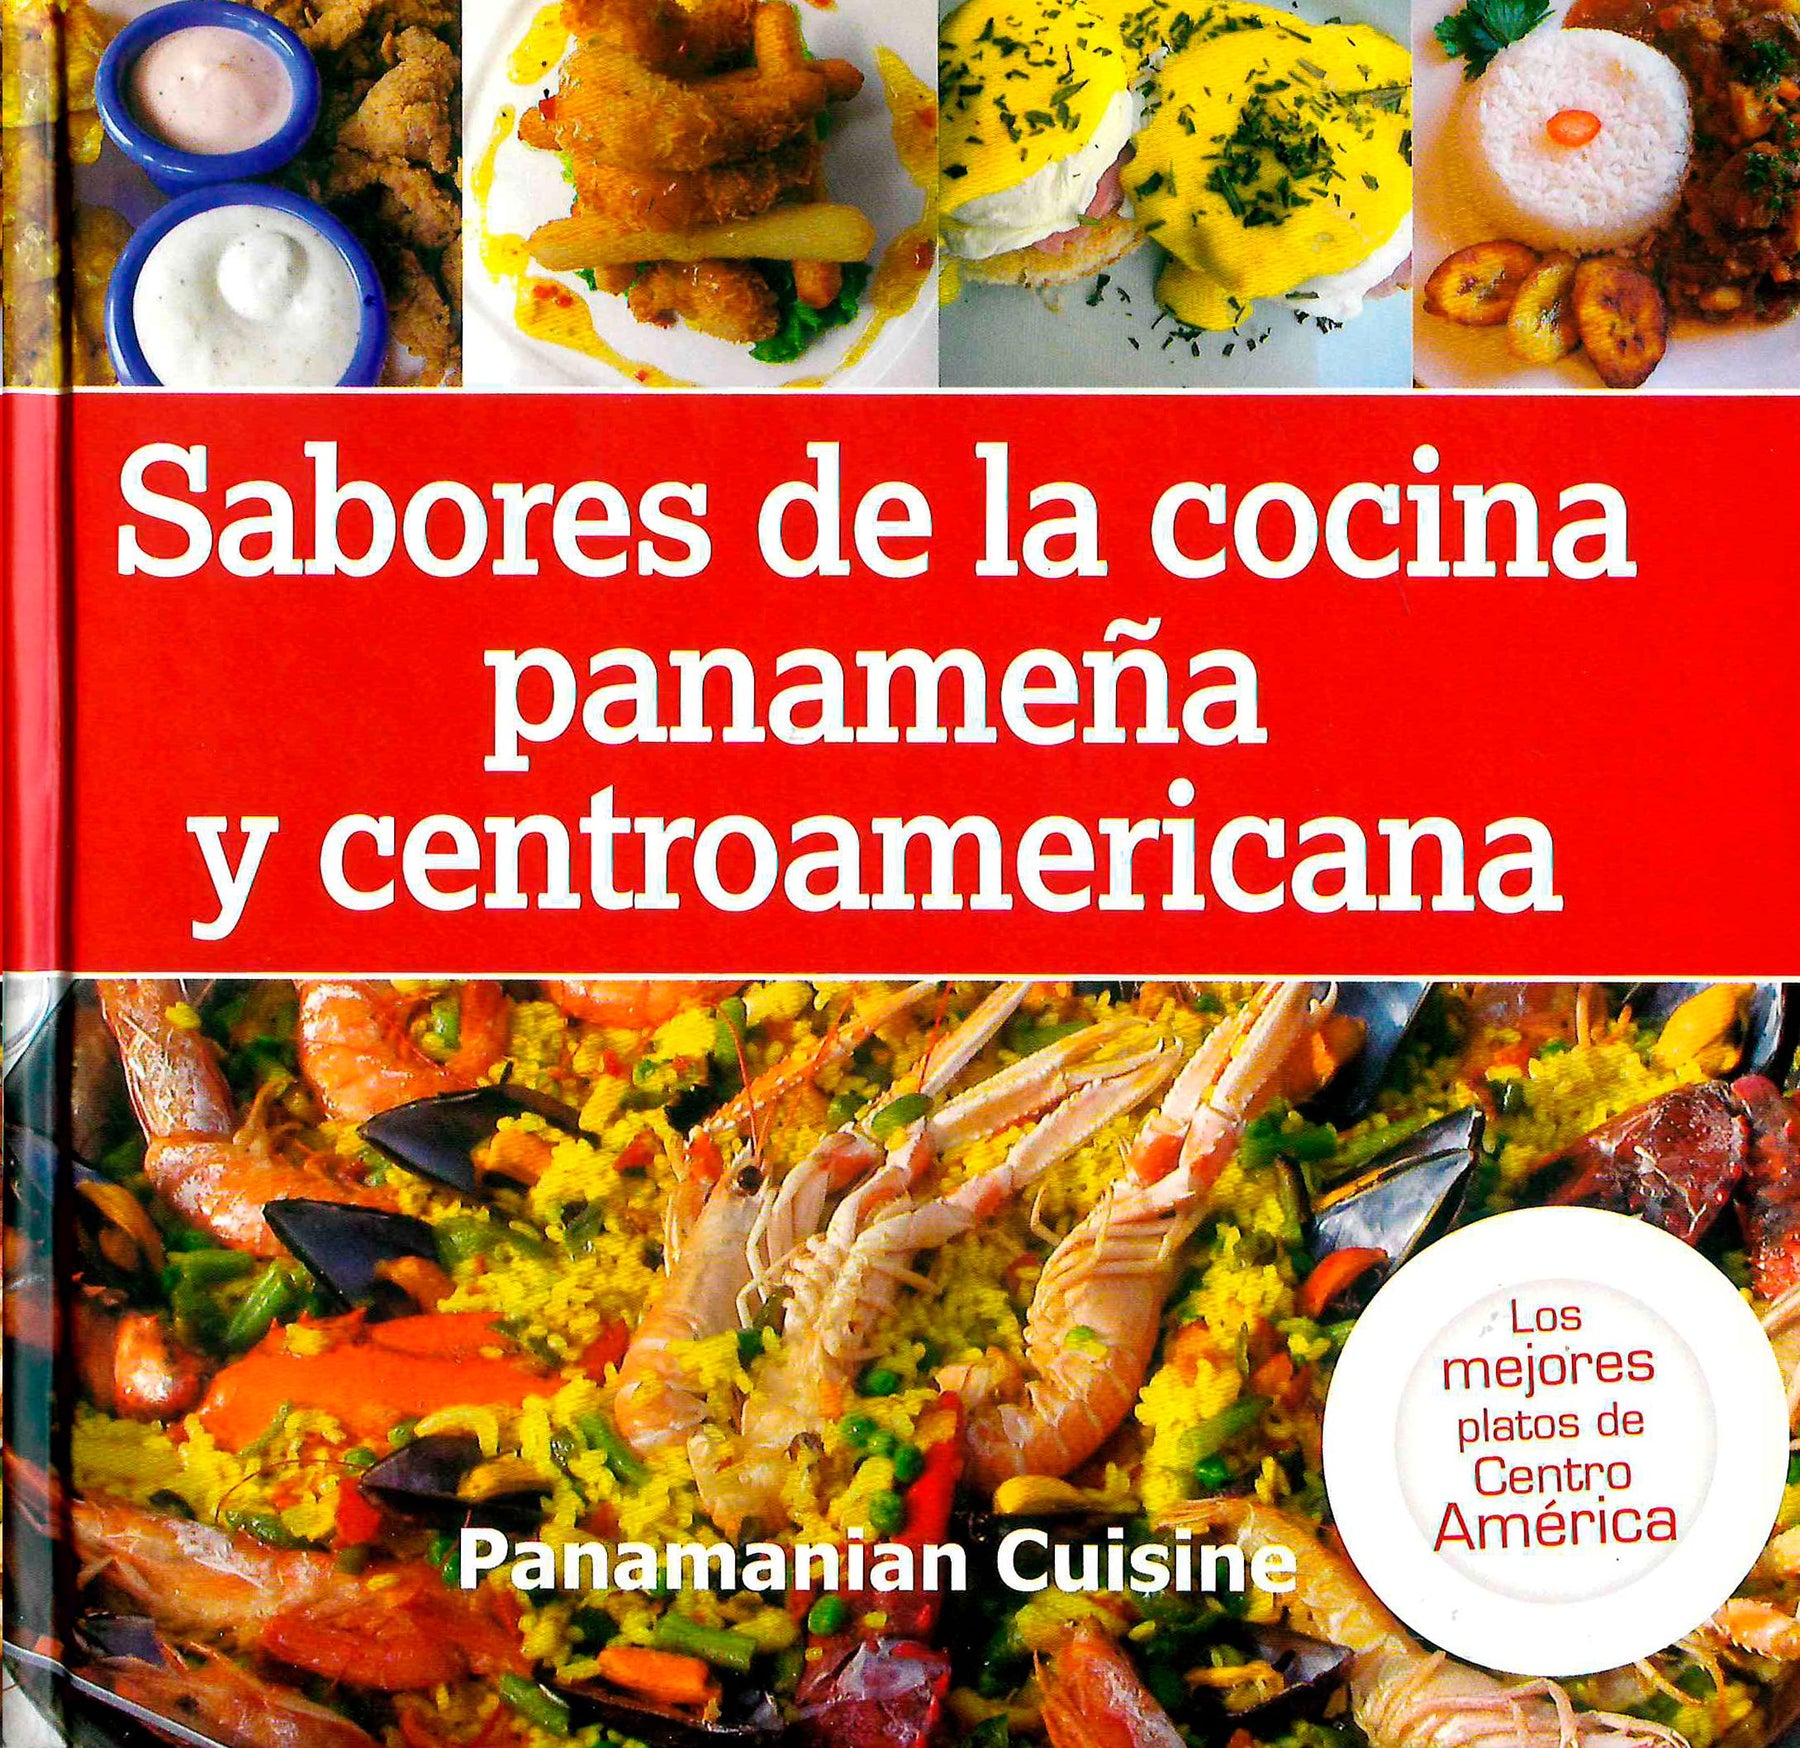 SABORES DE LA COCINA PANAMEÑA Y CENTROAMERICANA - Librerías El Hombre